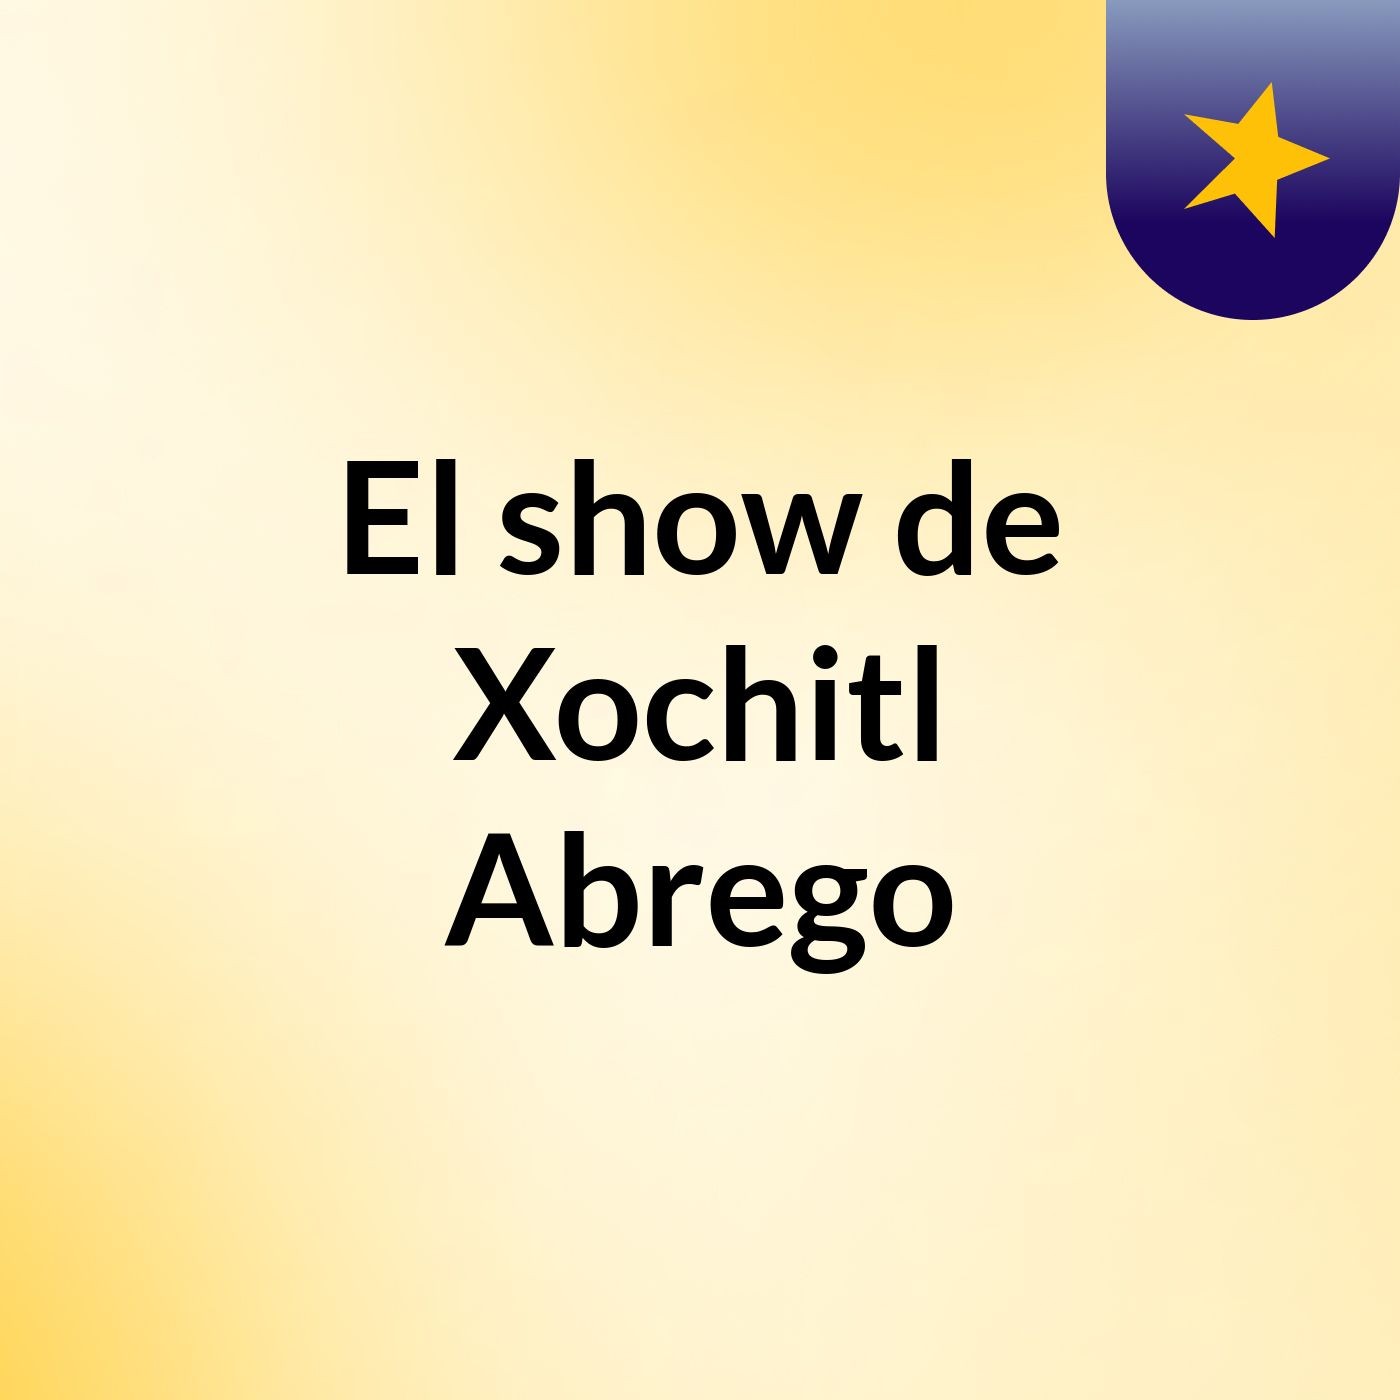 Episodio 8 - El show de Xochitl Abrego